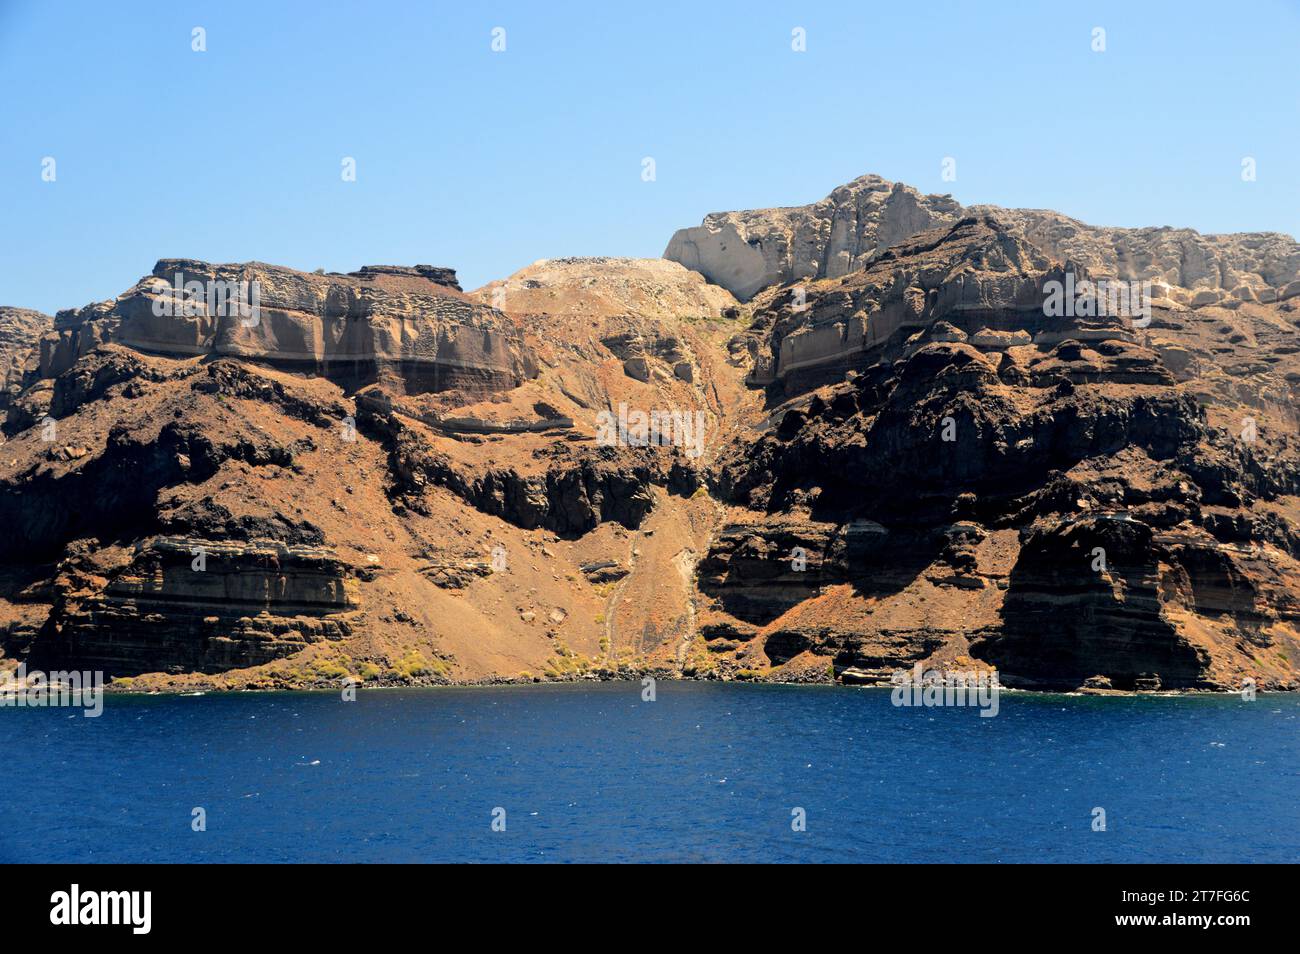 Le pareti rocciose sul bordo della Caldera (cratere) sull'isola vulcanica di Santorini, parte delle isole Cicladi nel Mar Egeo, Grecia, UE. Foto Stock